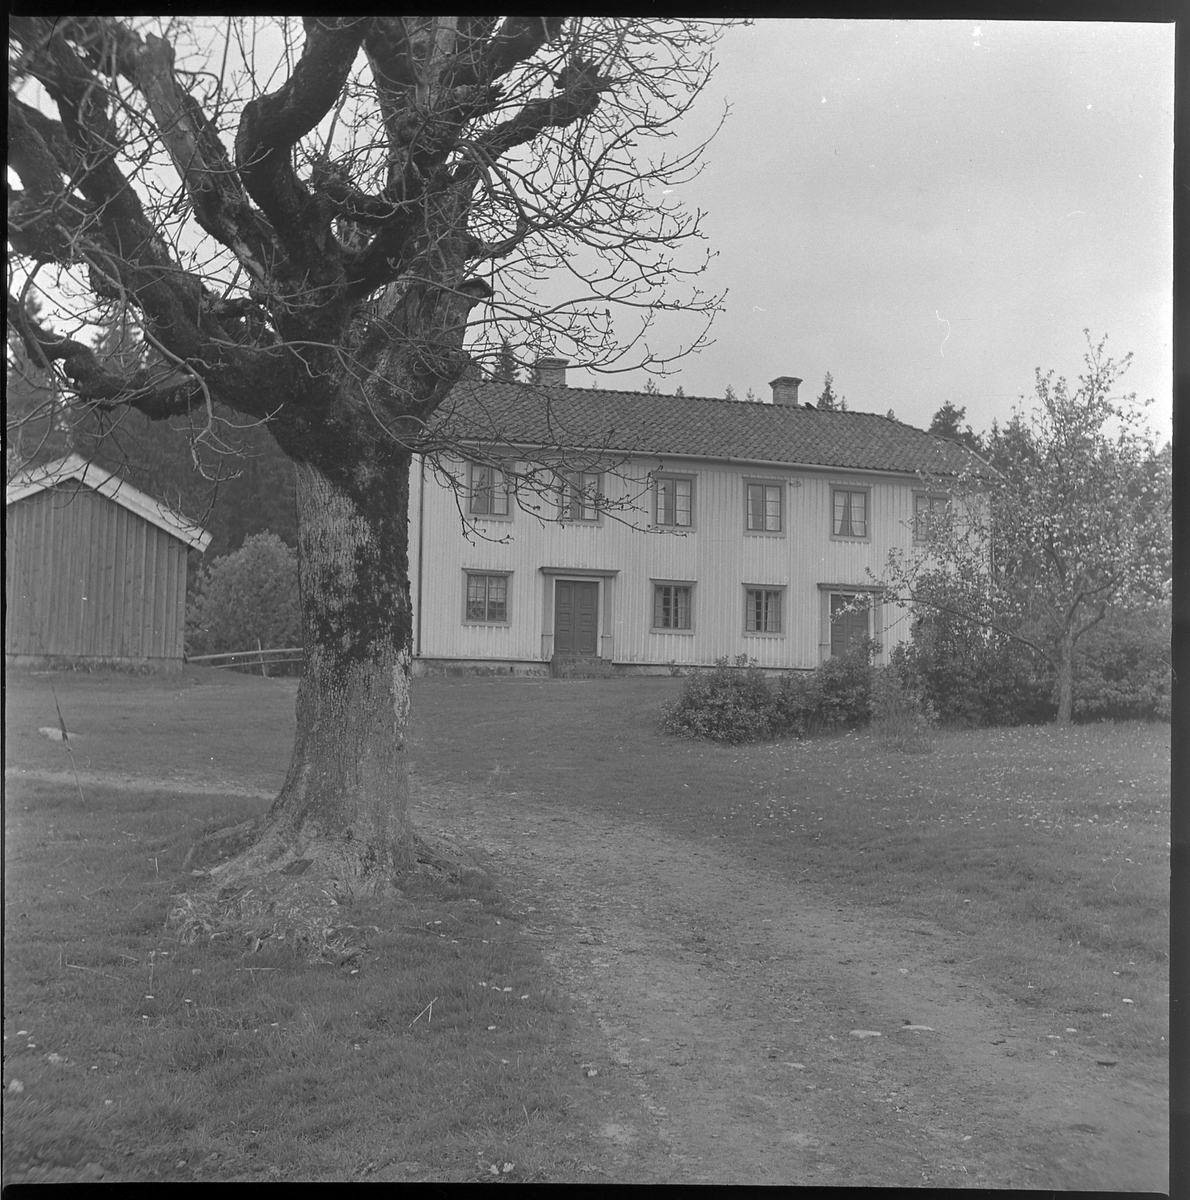 Läkarebo, Ödenäs sn. 21 maj 1950